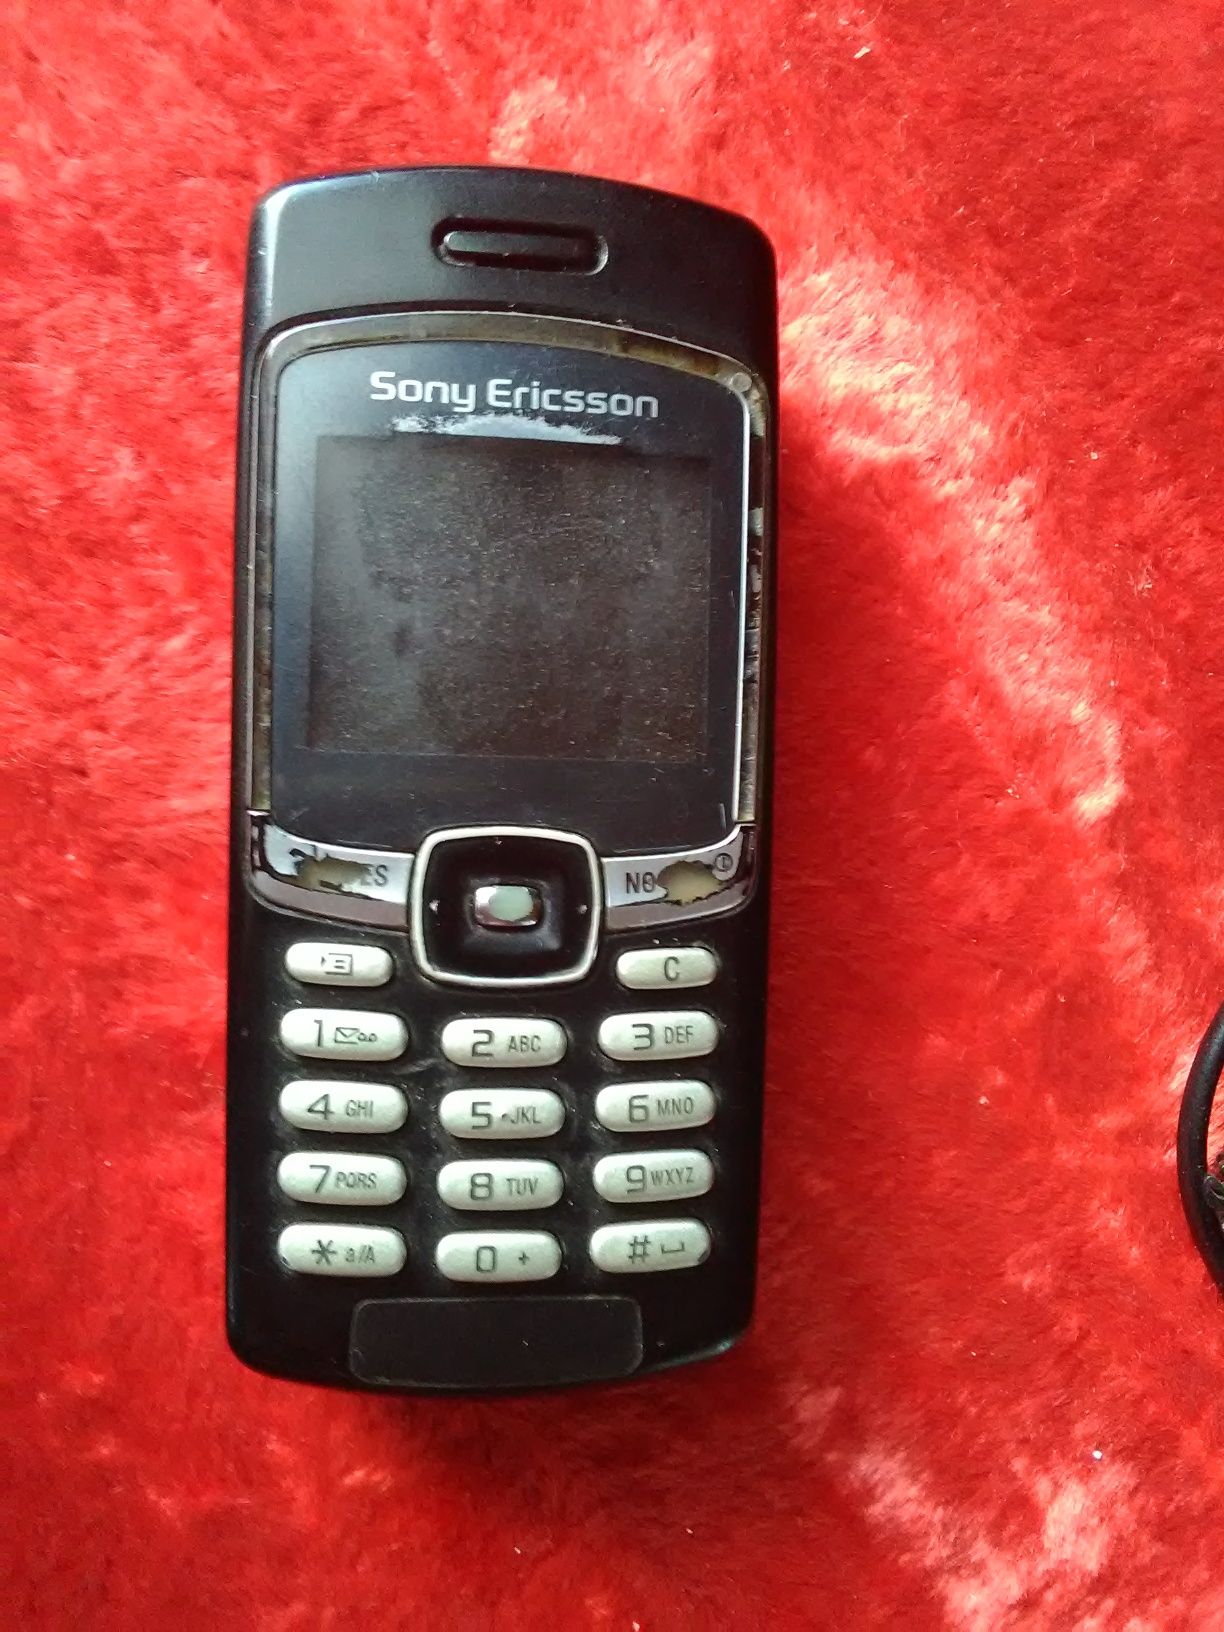 Мобильный Sony Ericsson. Зарядка.